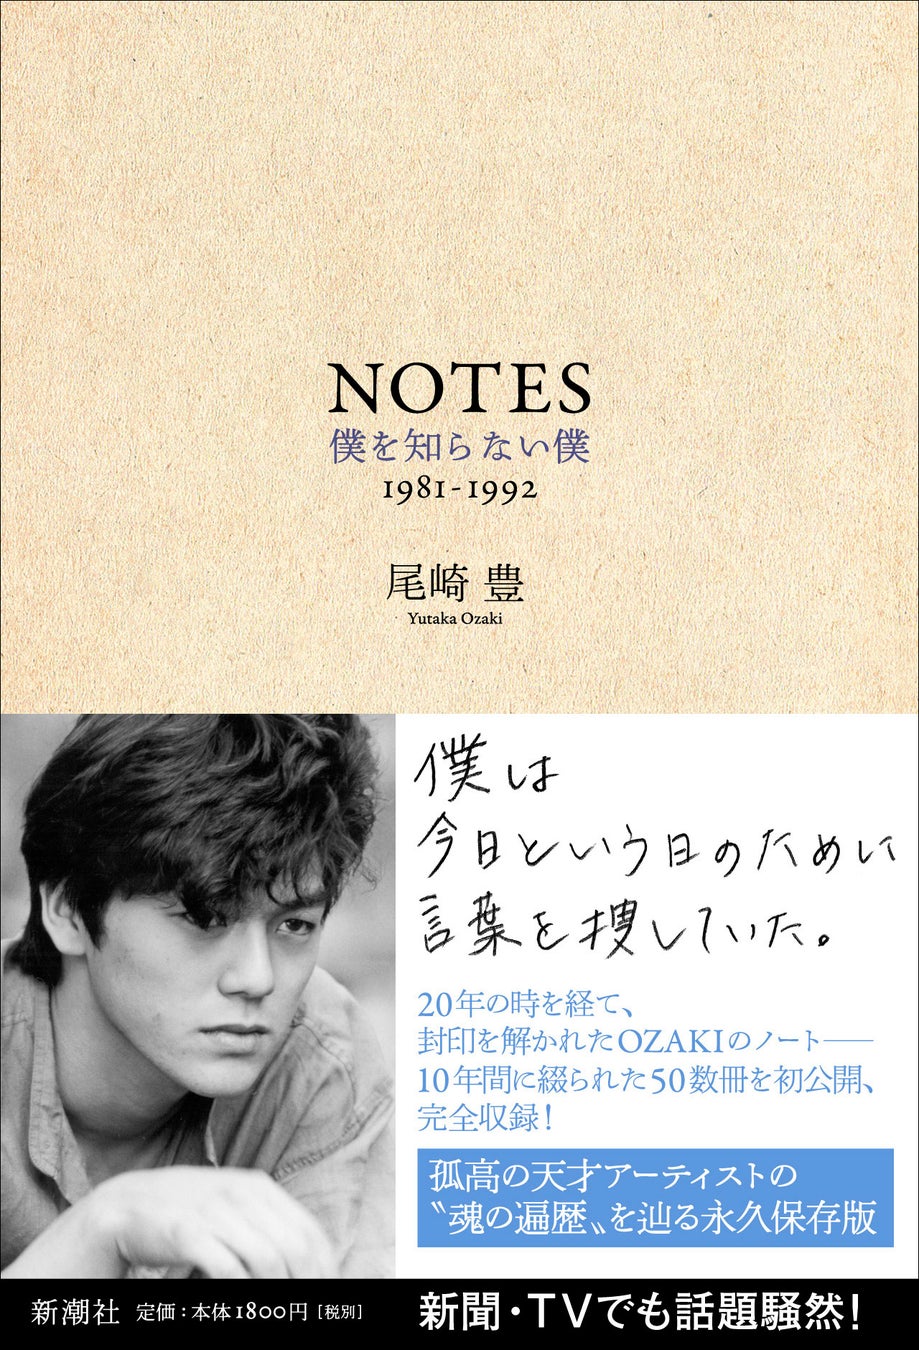 尾崎豊の著書『NOTES』が10年ぶりに重版！　没後30年を記念した回顧展で大きな話題に！ 